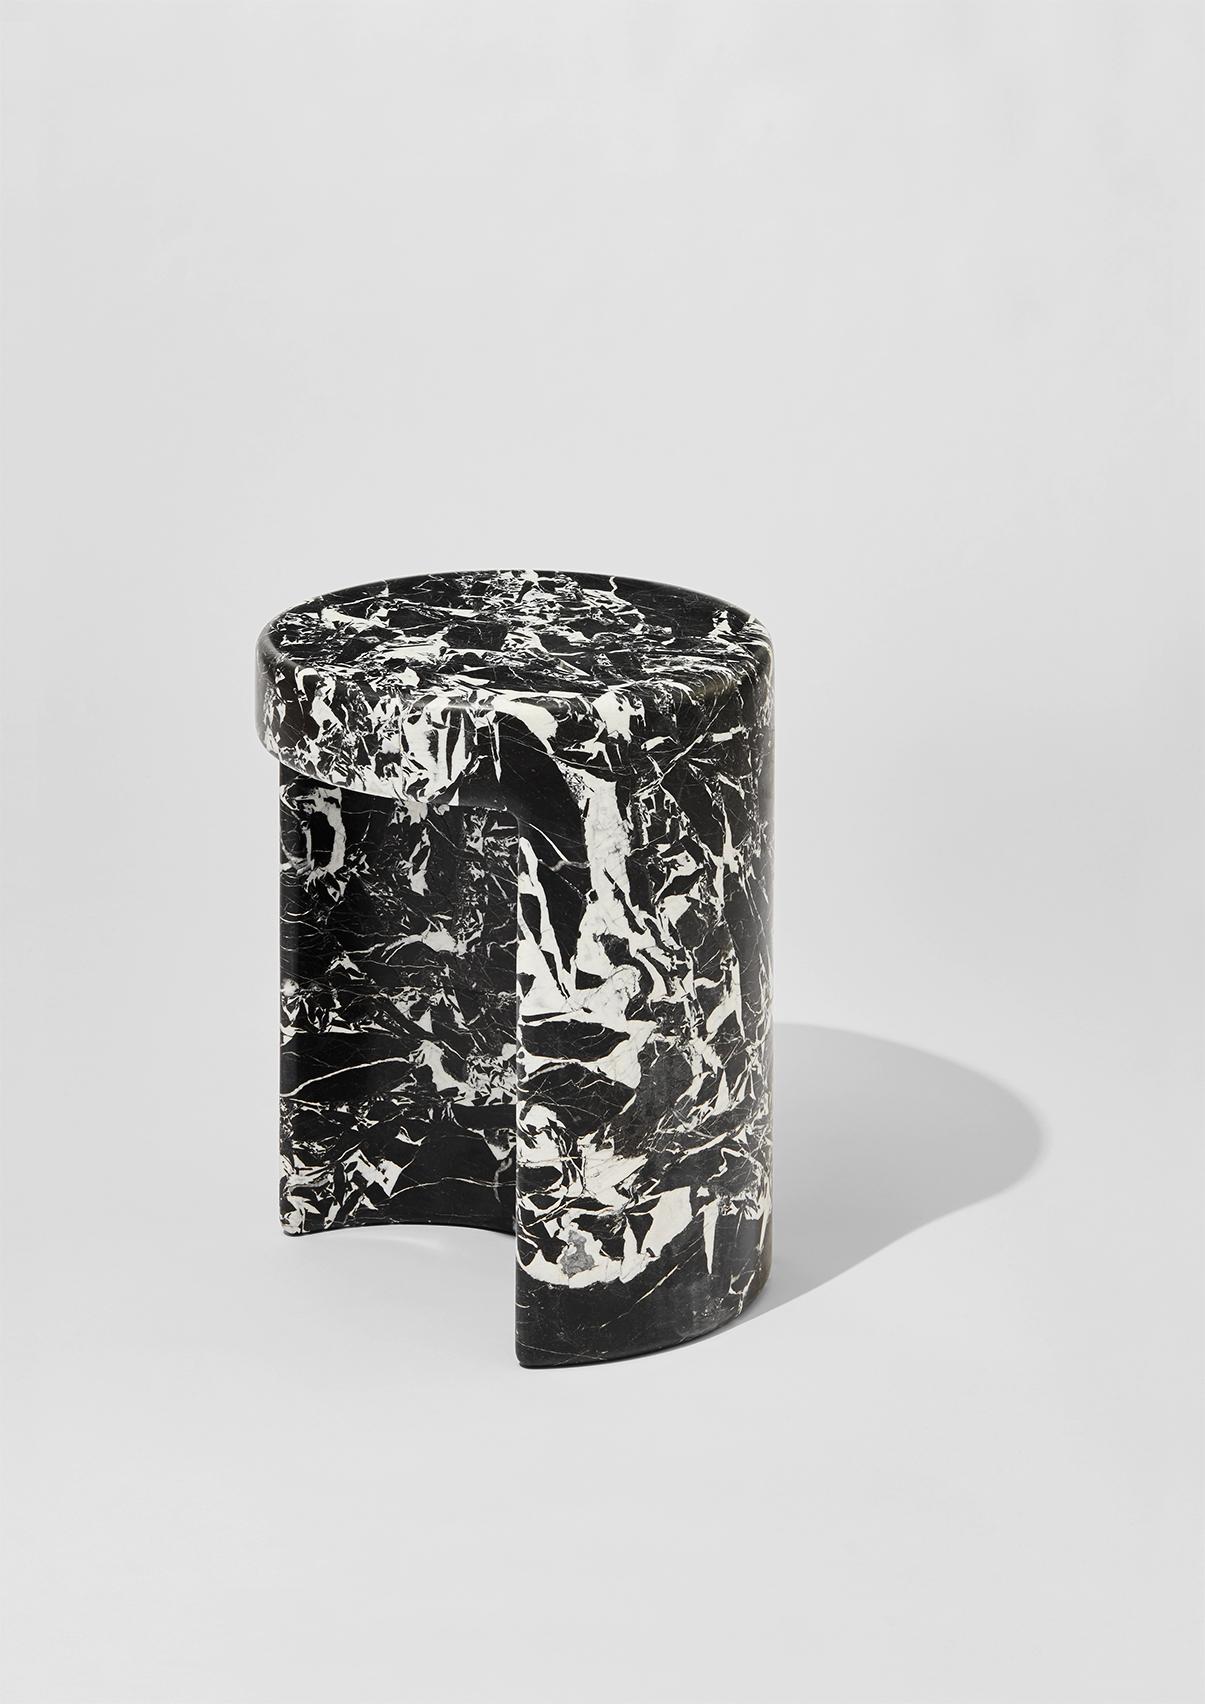 Marmorbeistelltische Métaphore, entworfen von Hervé Langlais für die Galerie Negropontes in Paris, Frankreich. 

Hervé Langlais ist Absolvent der Hochschule für Architektur der Normandie in Rouen. Mehr als fünfzehn Jahre lang arbeitete er mit Paul